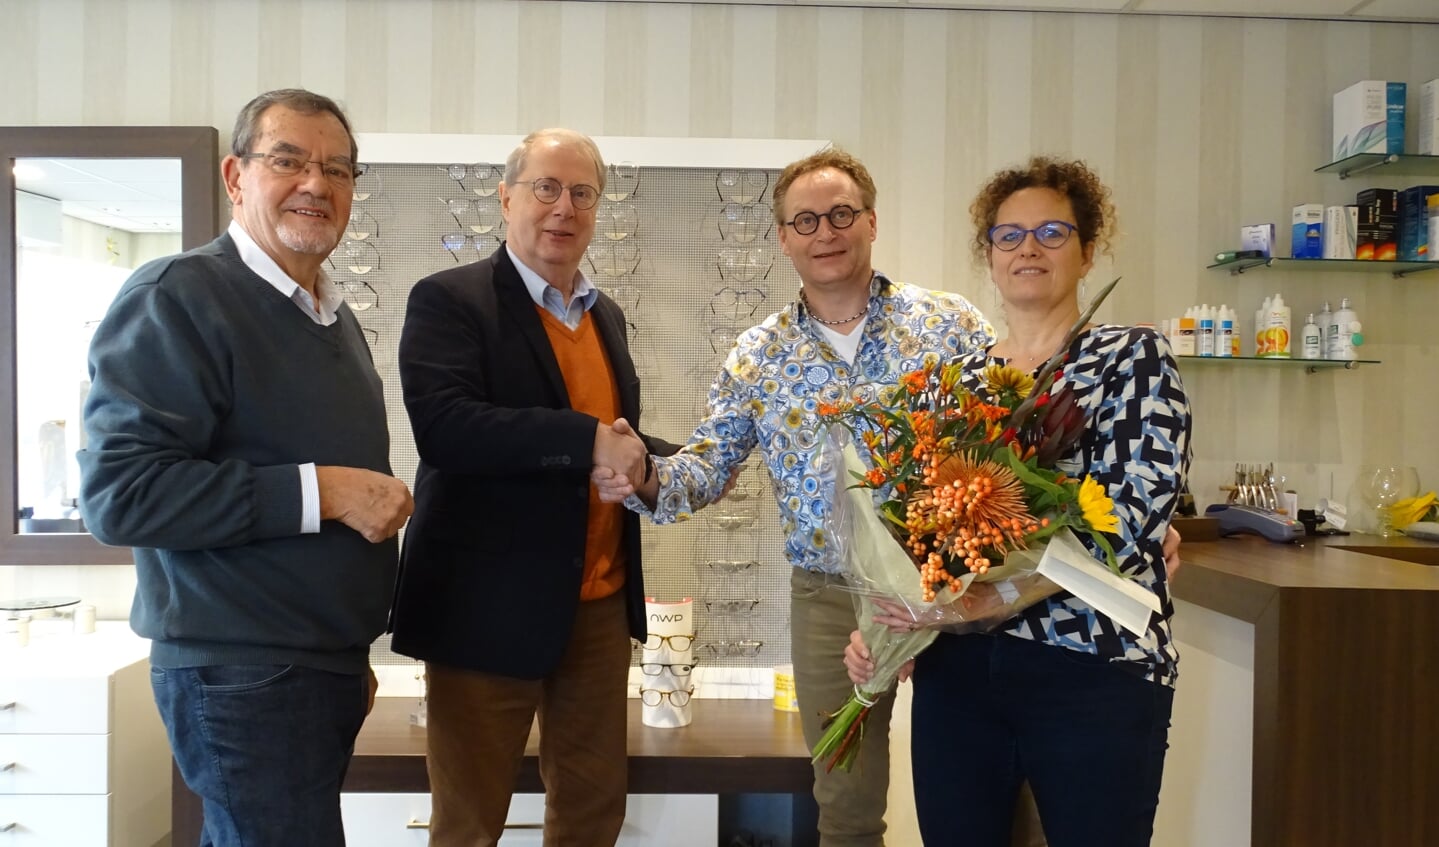 v.l.n.r.: bestuursleden Carel Verdonschot en Sjef den Uijl, Sander en Angelique Cooijmans.
